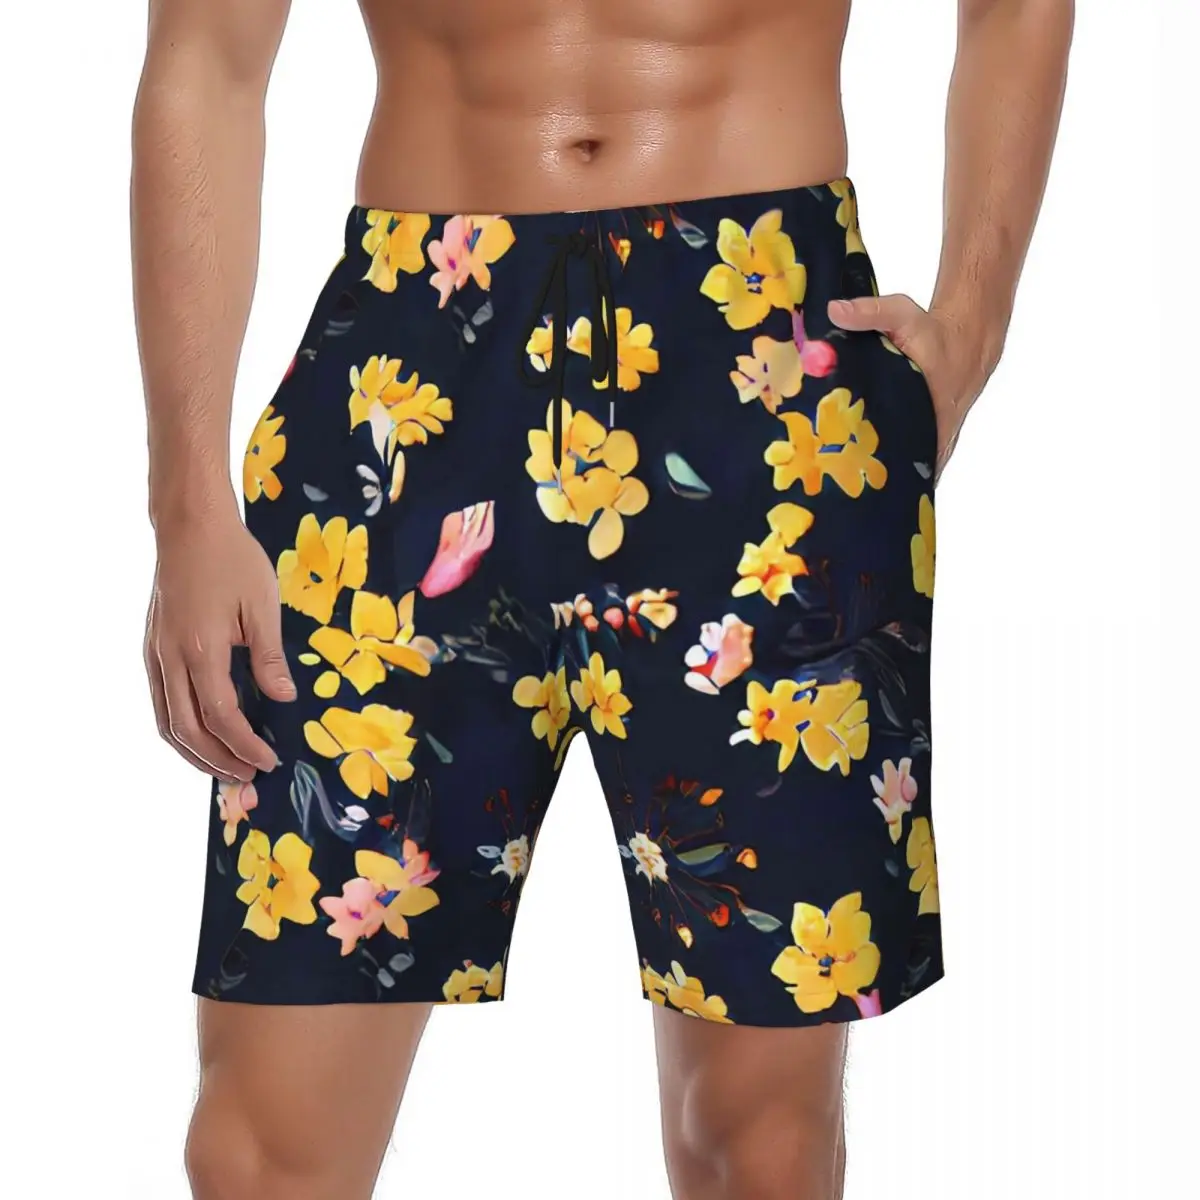 

Шорты мужские спортивные с цветочным принтом, повседневные короткие штаны для спортзала, быстросохнущие, с винтажным цветочным принтом, плавки, желтые, на лето